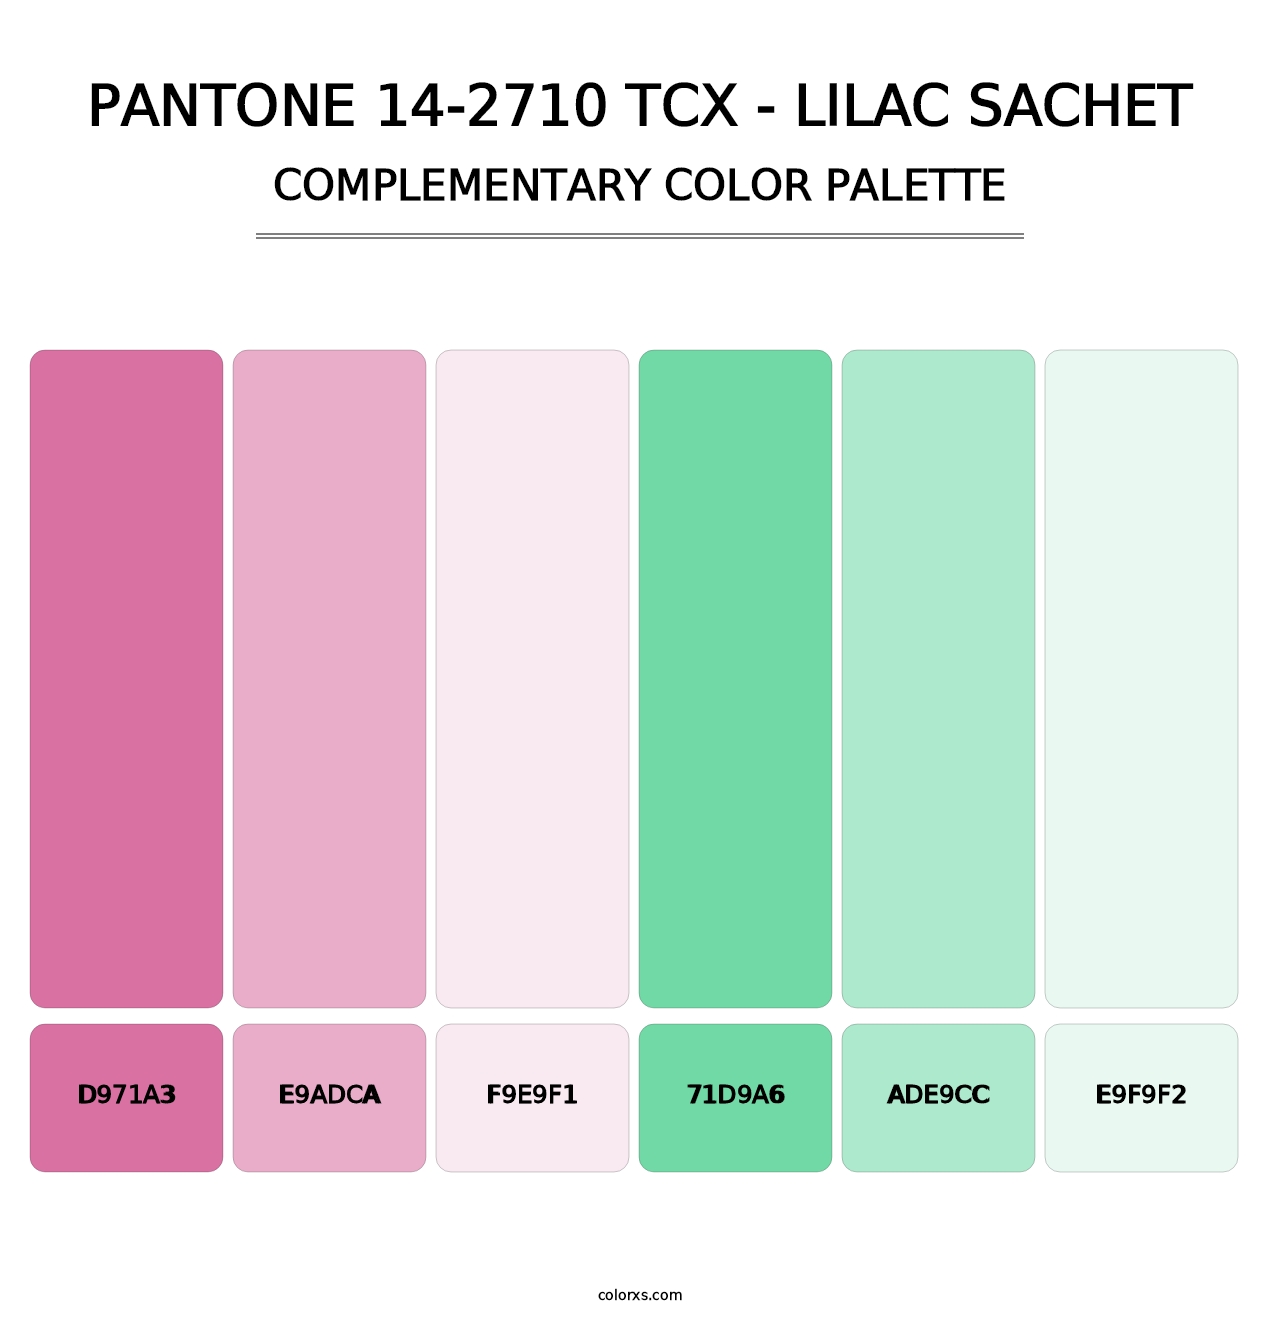 PANTONE 14-2710 TCX - Lilac Sachet - Complementary Color Palette